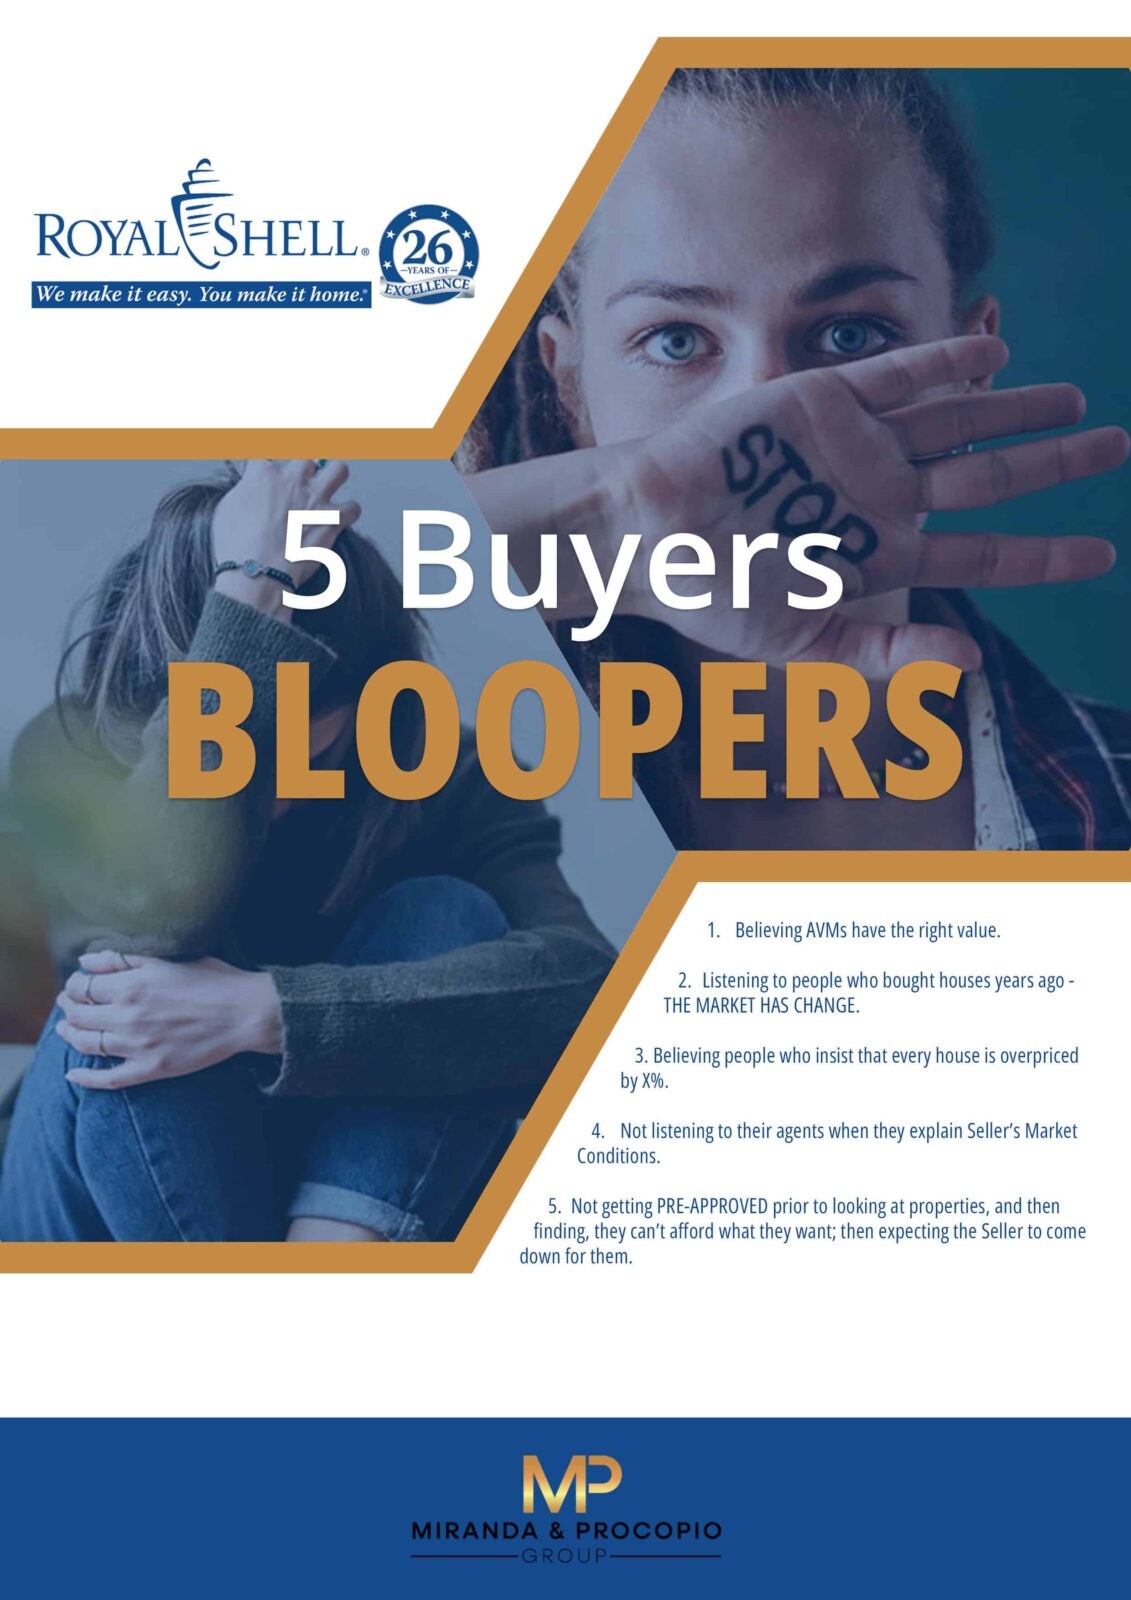 5 buyer bloopers - engel and völkers